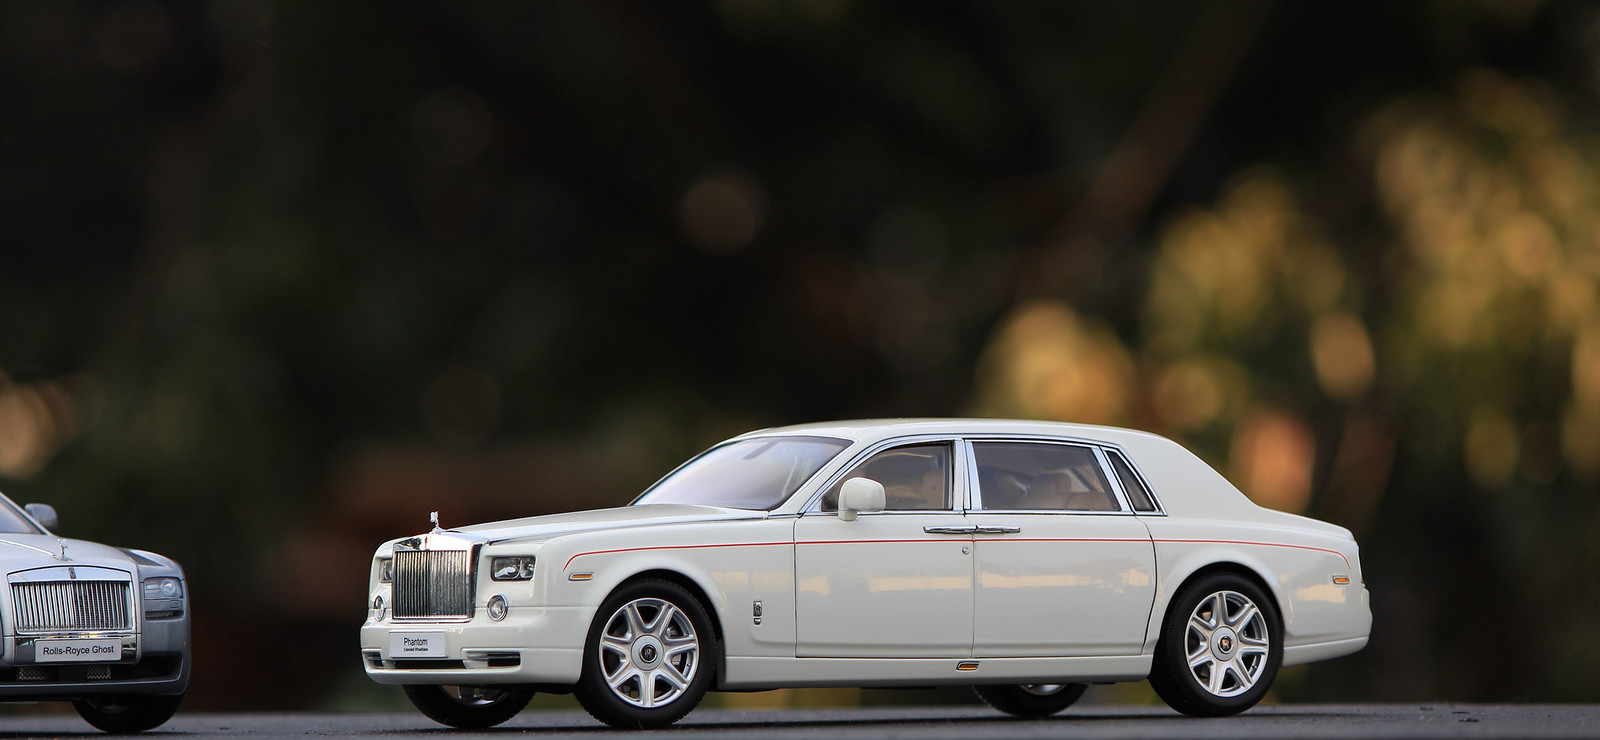 Mô hình xe Rolls Royce Ghost Full Color 118 Kyosho  banmohinhtinhcom